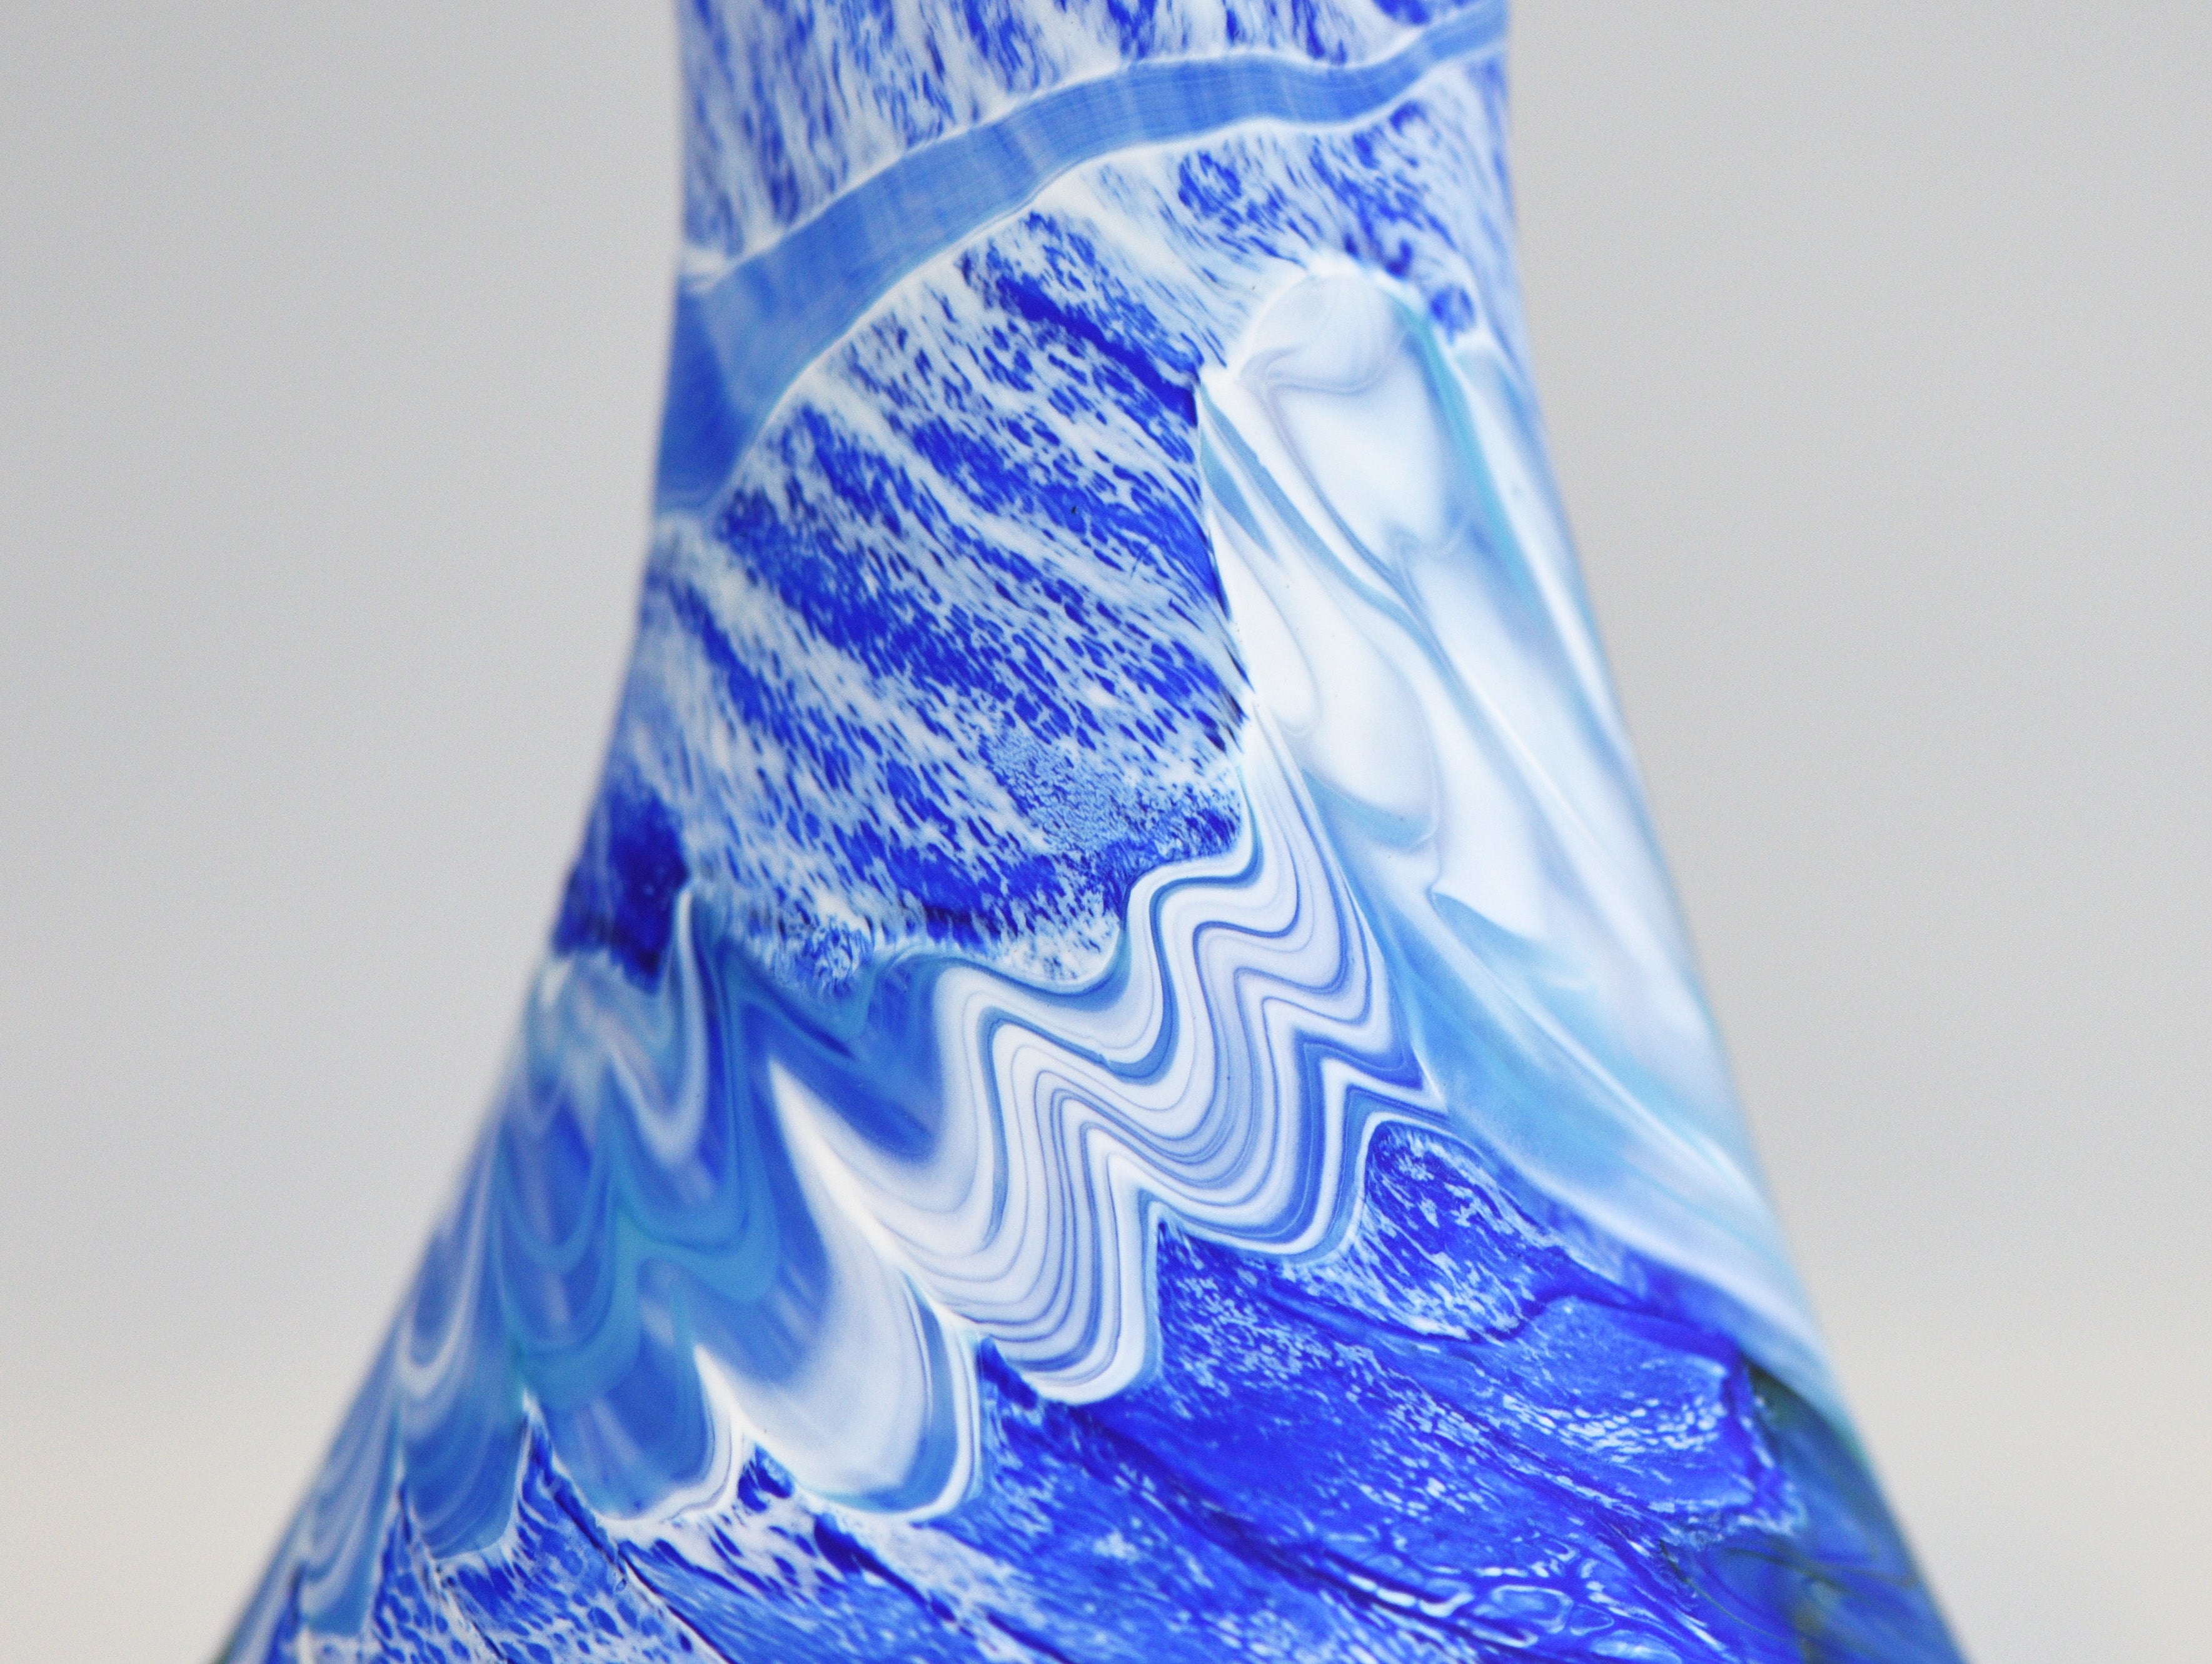 Tall Blue, White, Green & Black Matte Vase